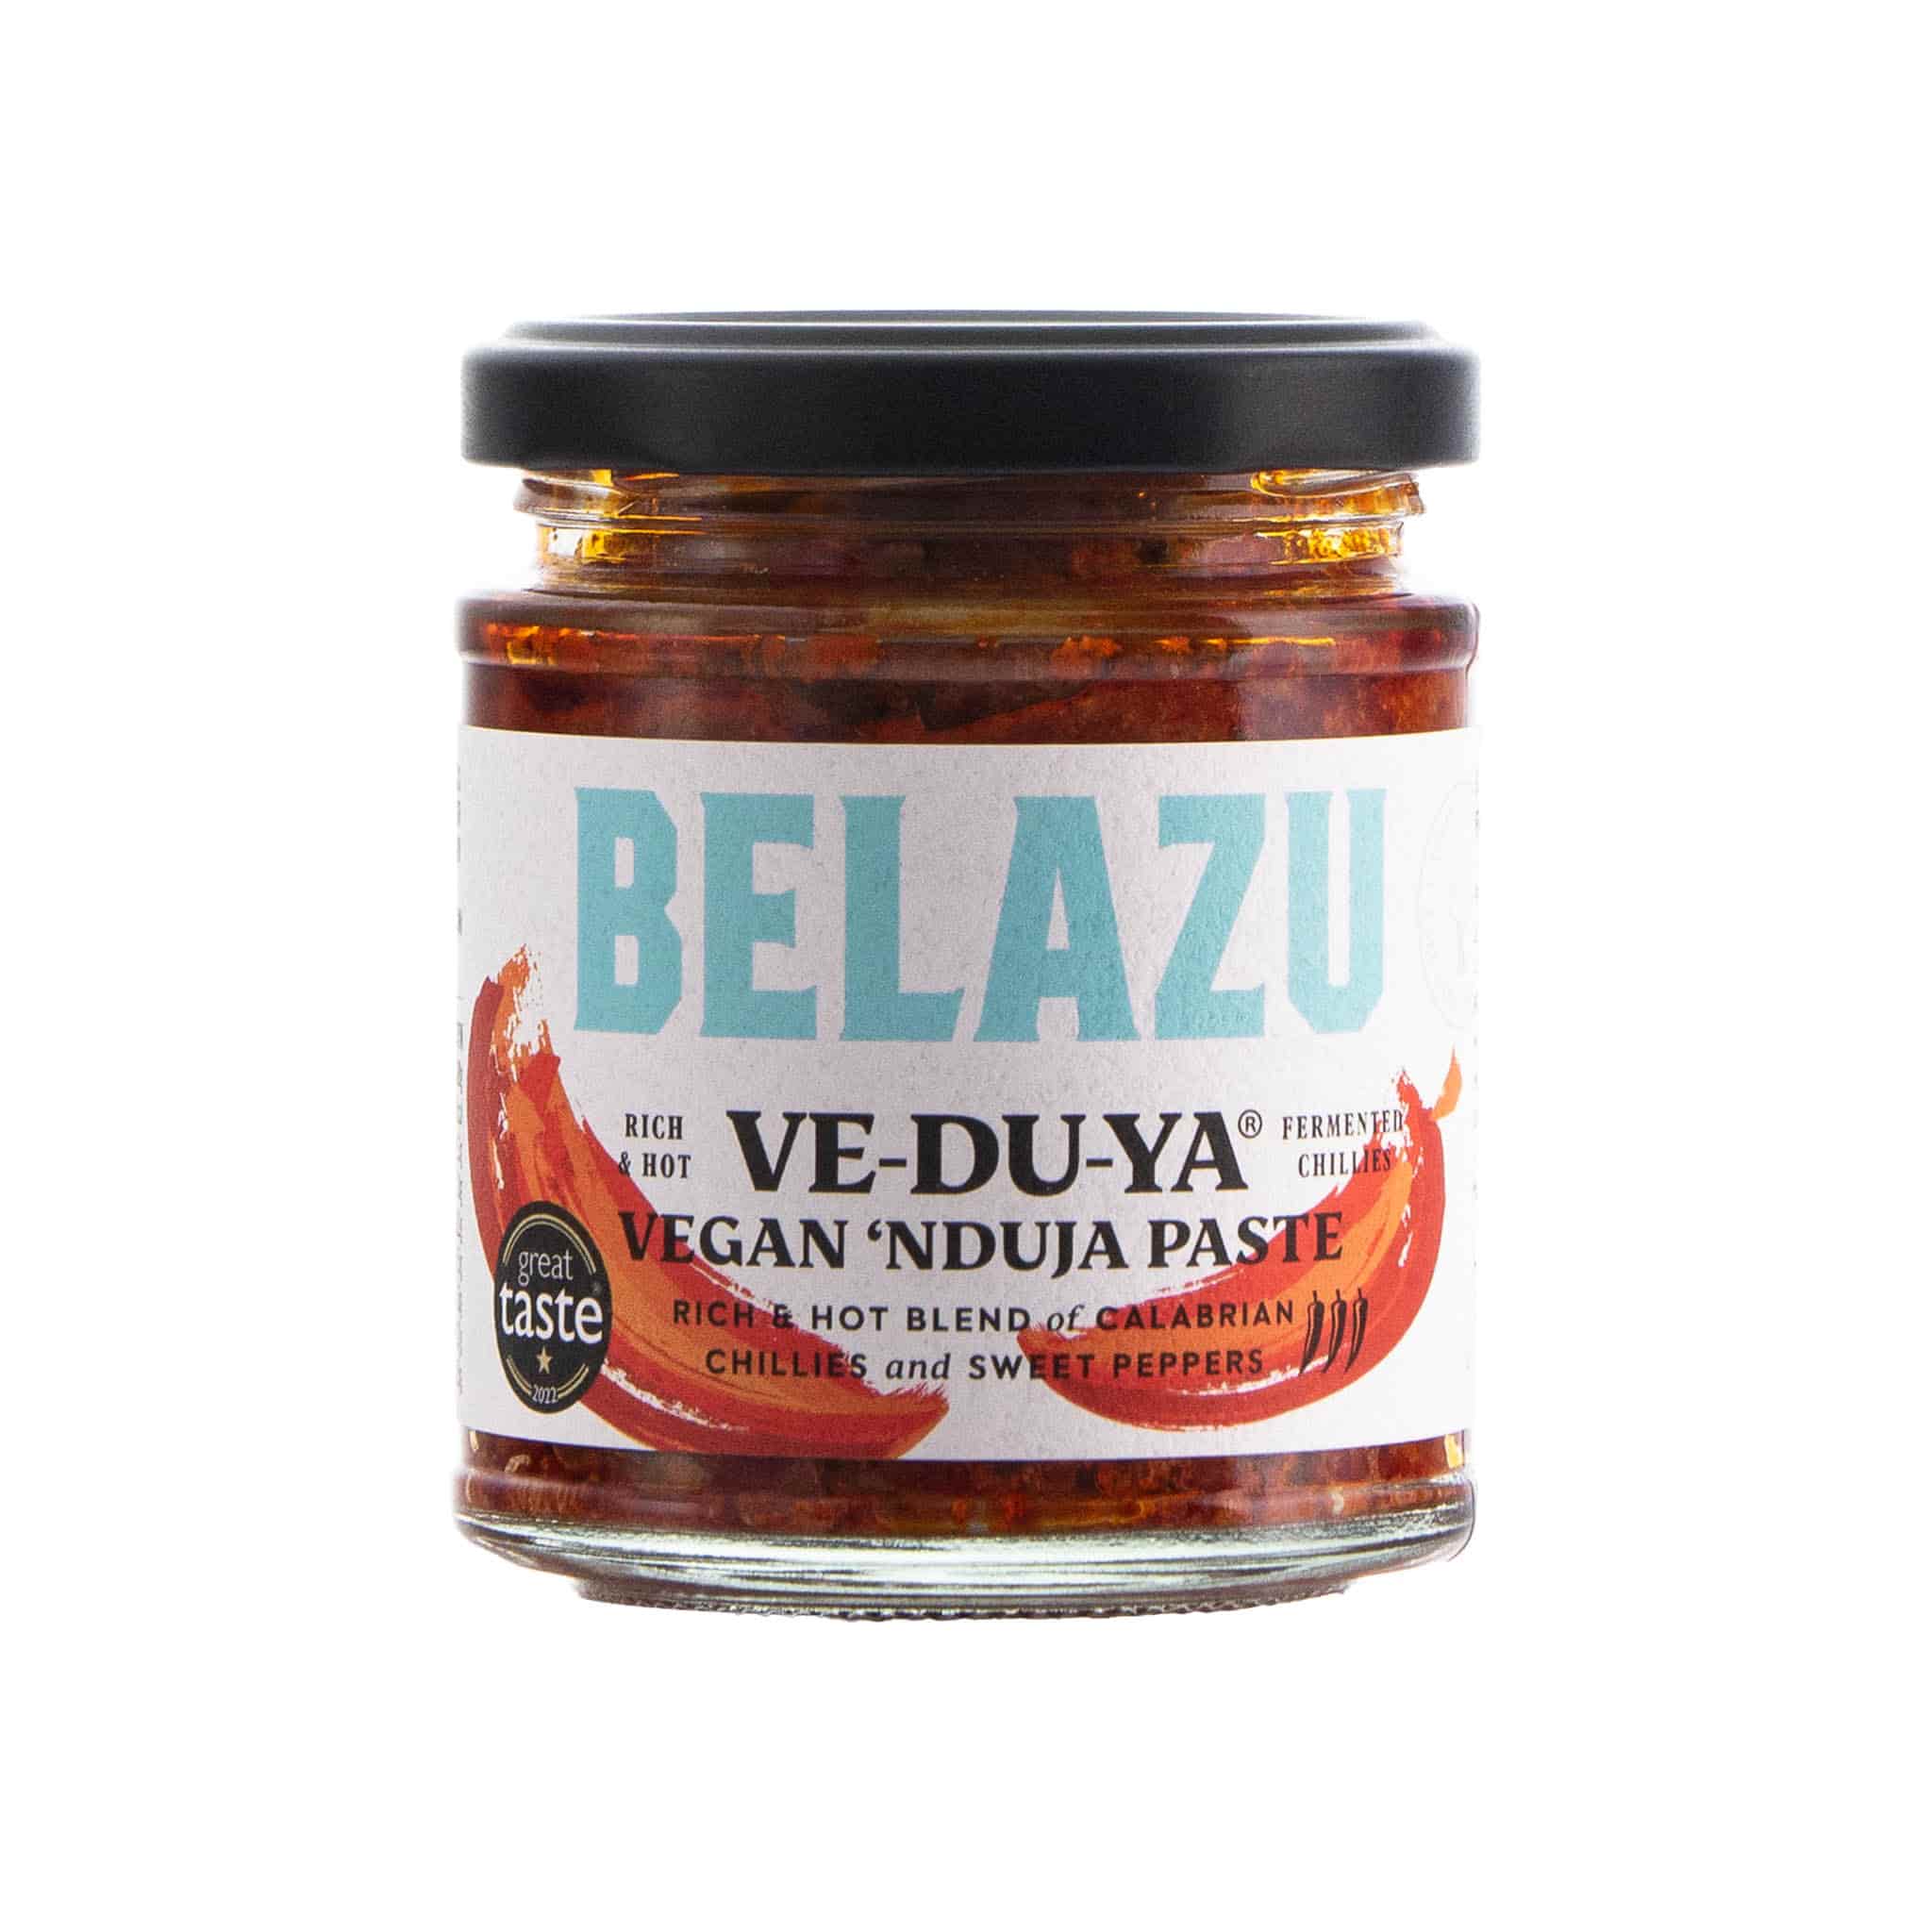 Belazu Veduya, Vegan Nduja, 170g